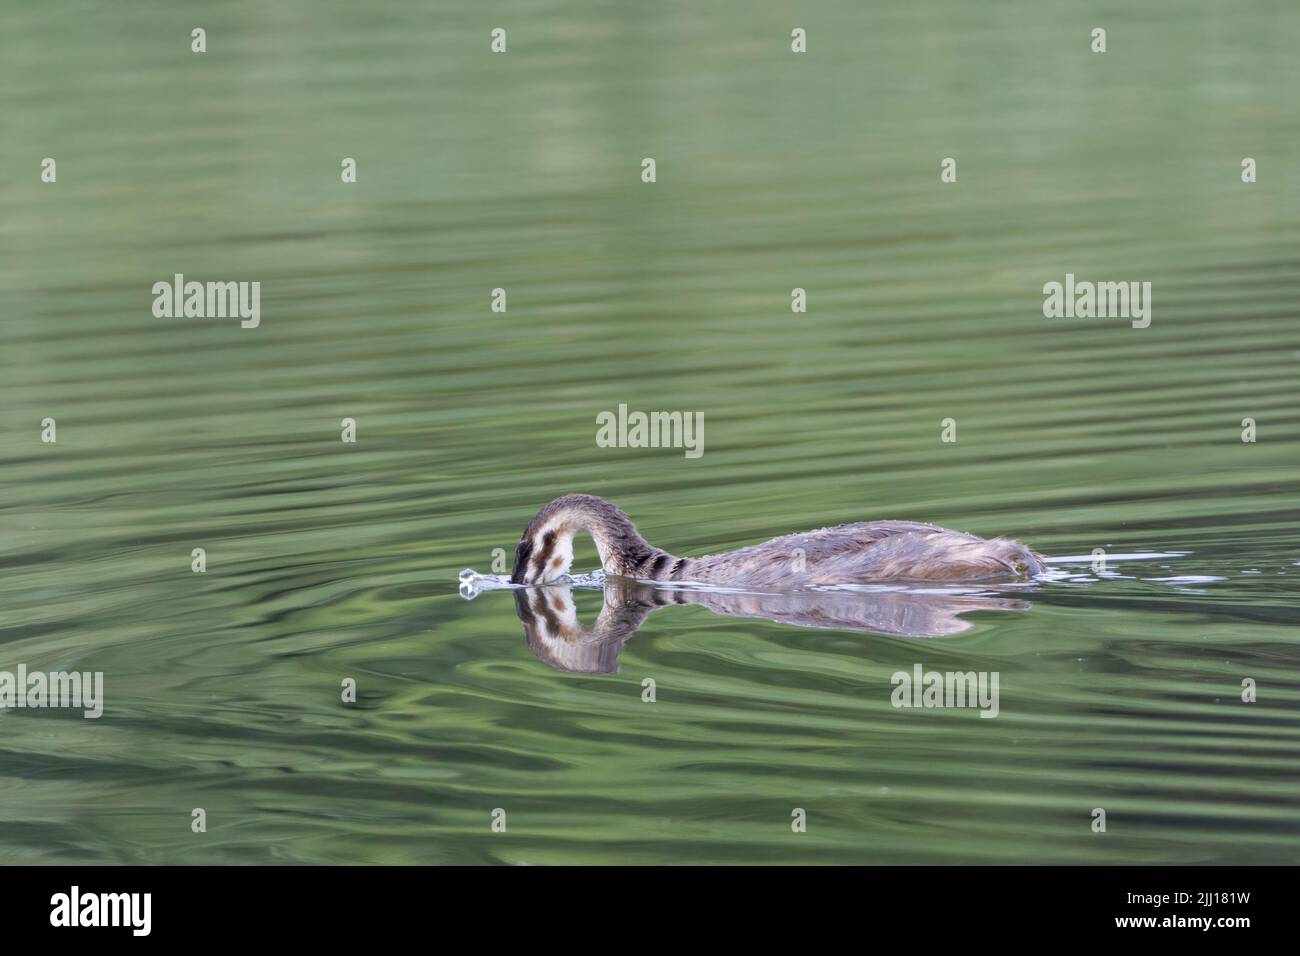 Gran jabalí (podiceps cristatus), imagen artística con reflejo en agua formando forma abstracta a cabeza y cuello sumergidos Foto de stock